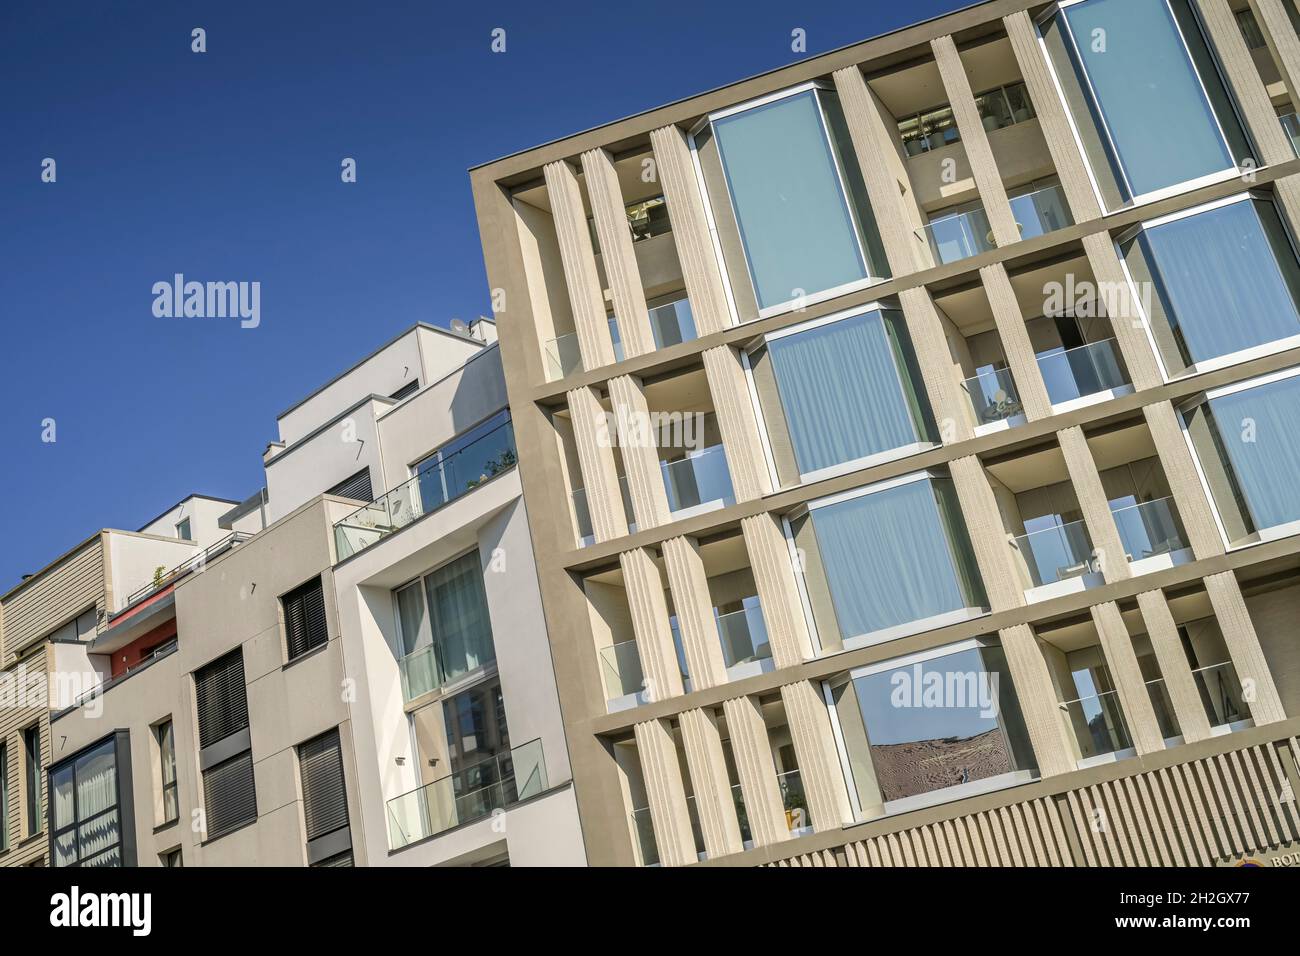 Wohnimmobilien über der Botschaft der Mongolei, Hausvogteiplatz, Mitte, Berlin, Deutschland Stock Photo